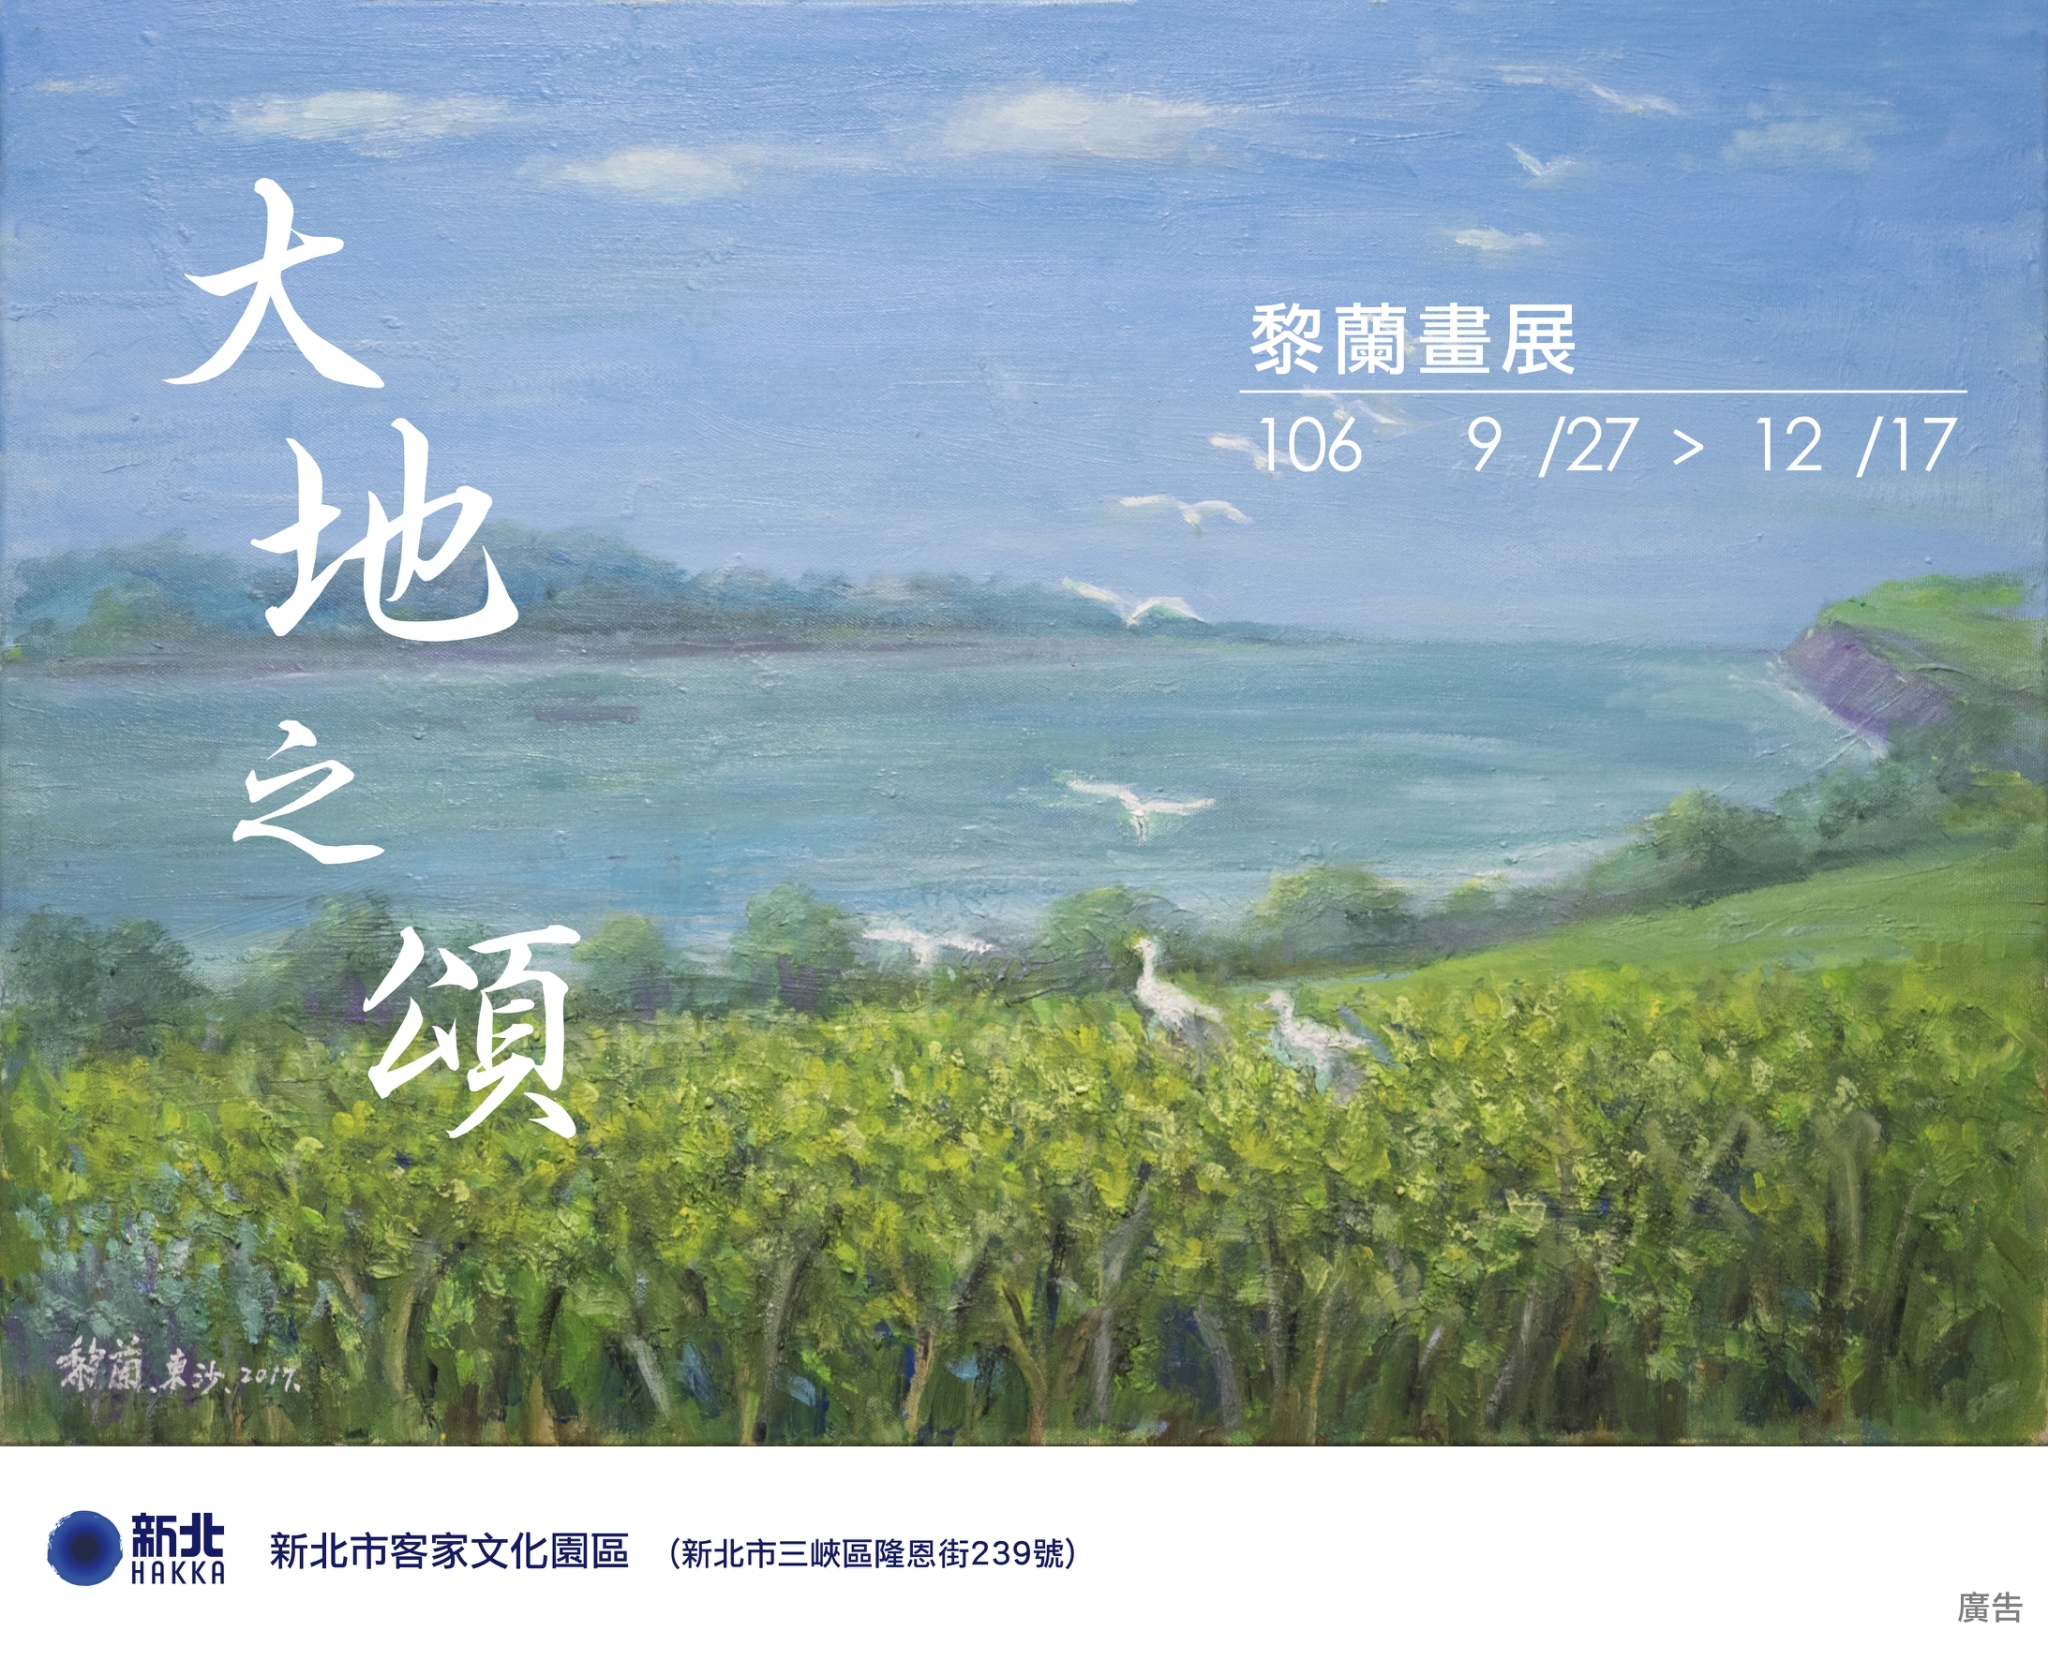 大地之頌—黎蘭畫展海報